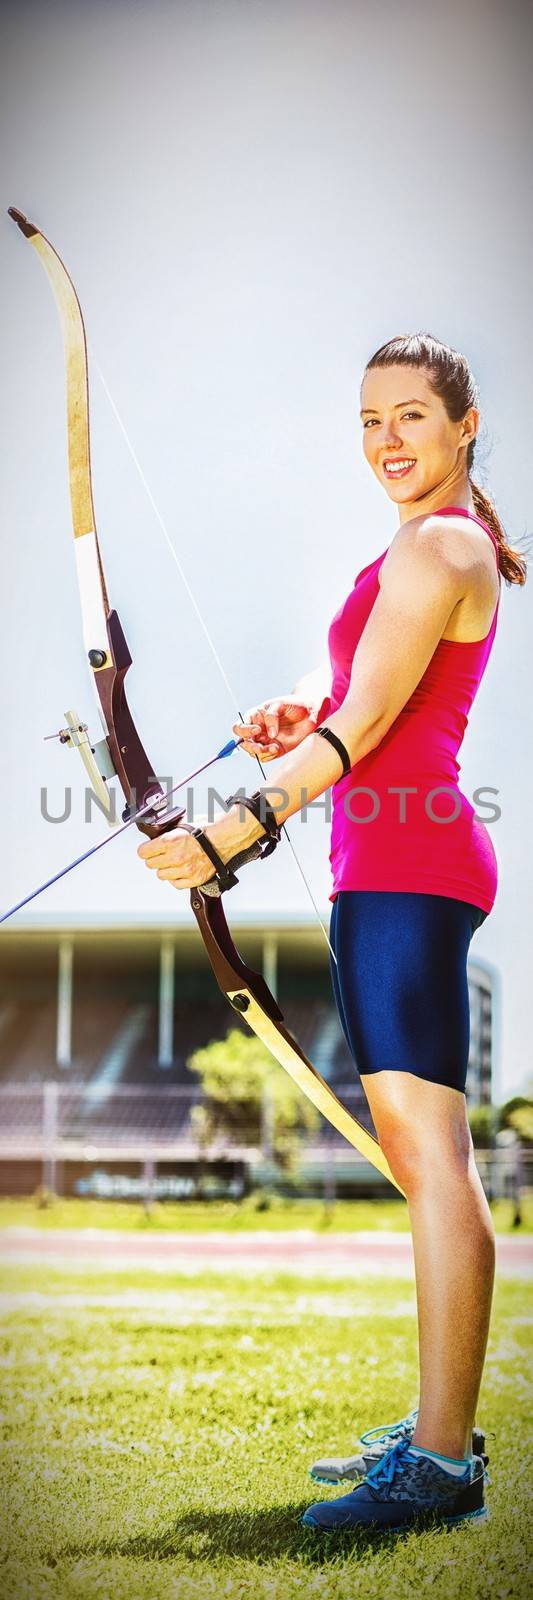 Portrait of female athlete practicing archery in stadium